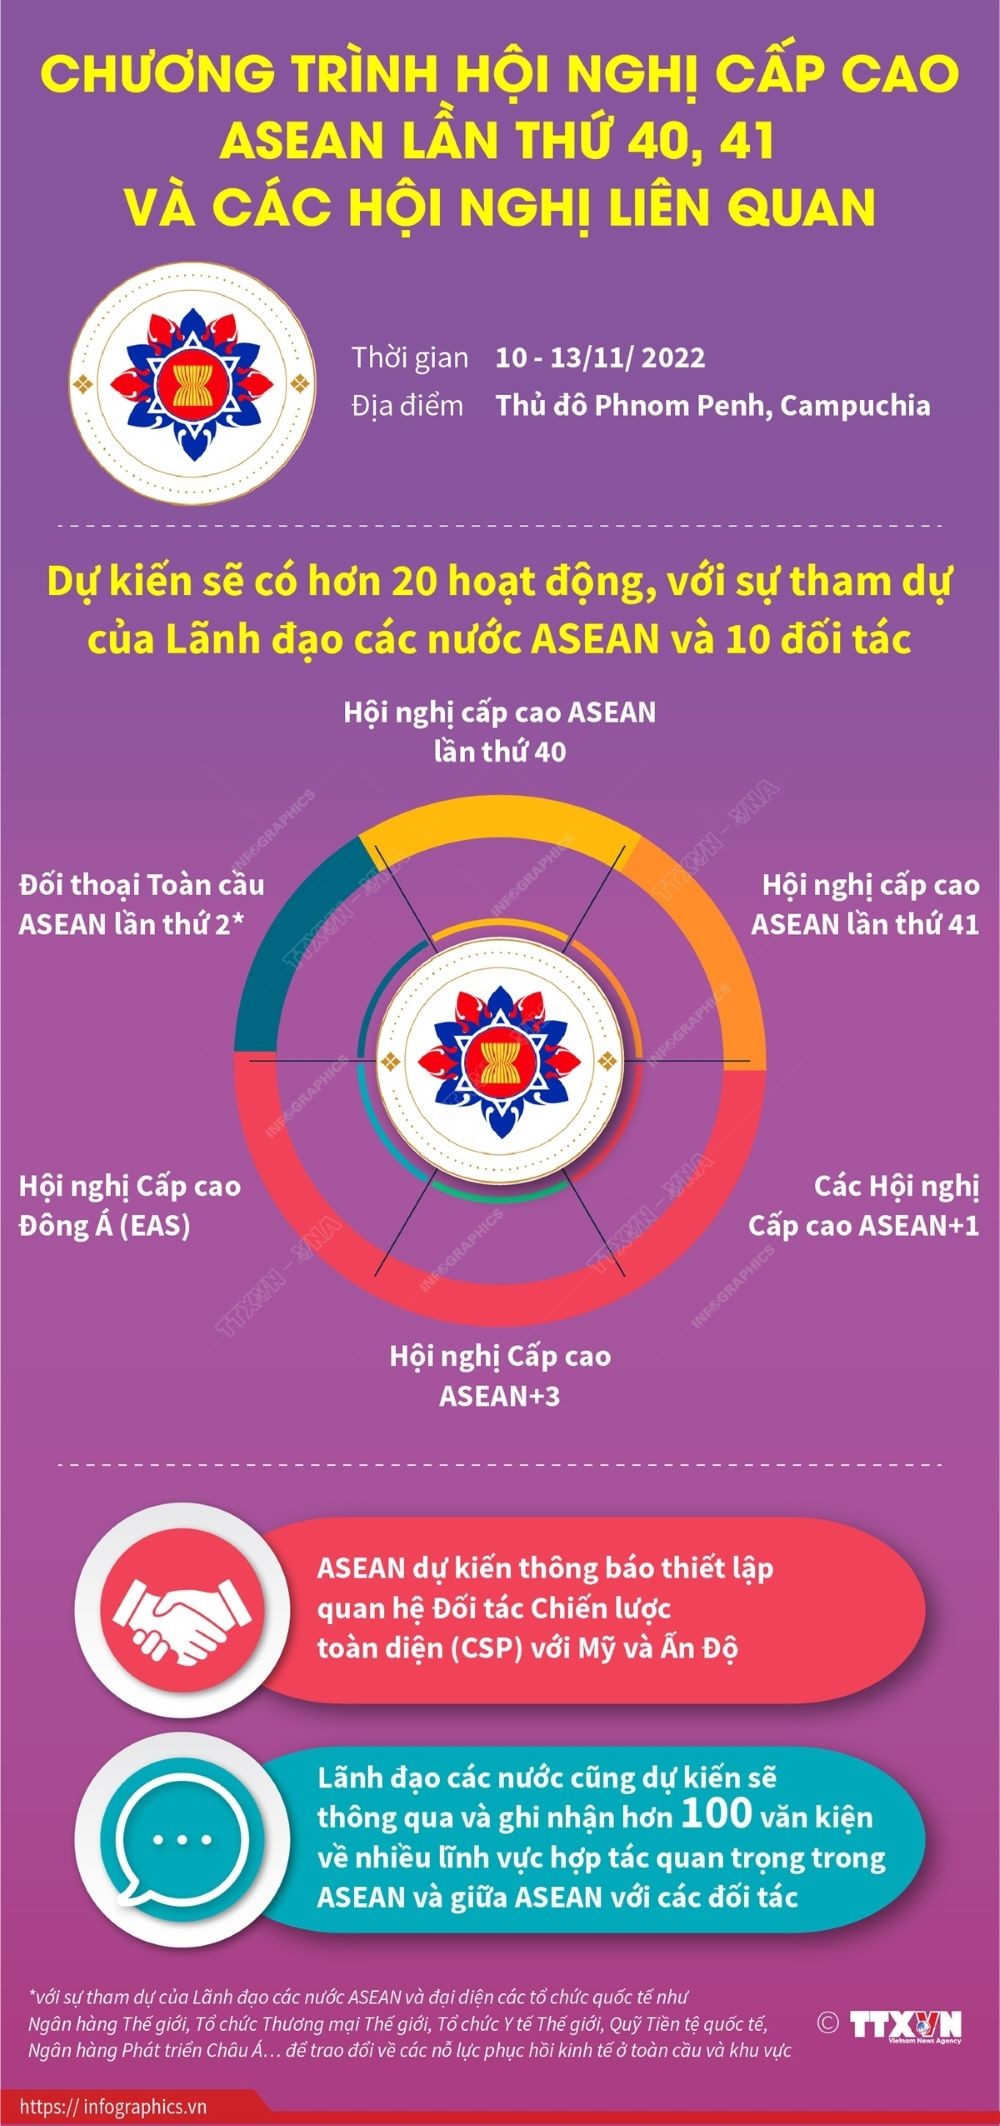 Chương trình nghị sự của Hội nghị cấp cao ASEAN 40, 41 và các hội nghị liên quan